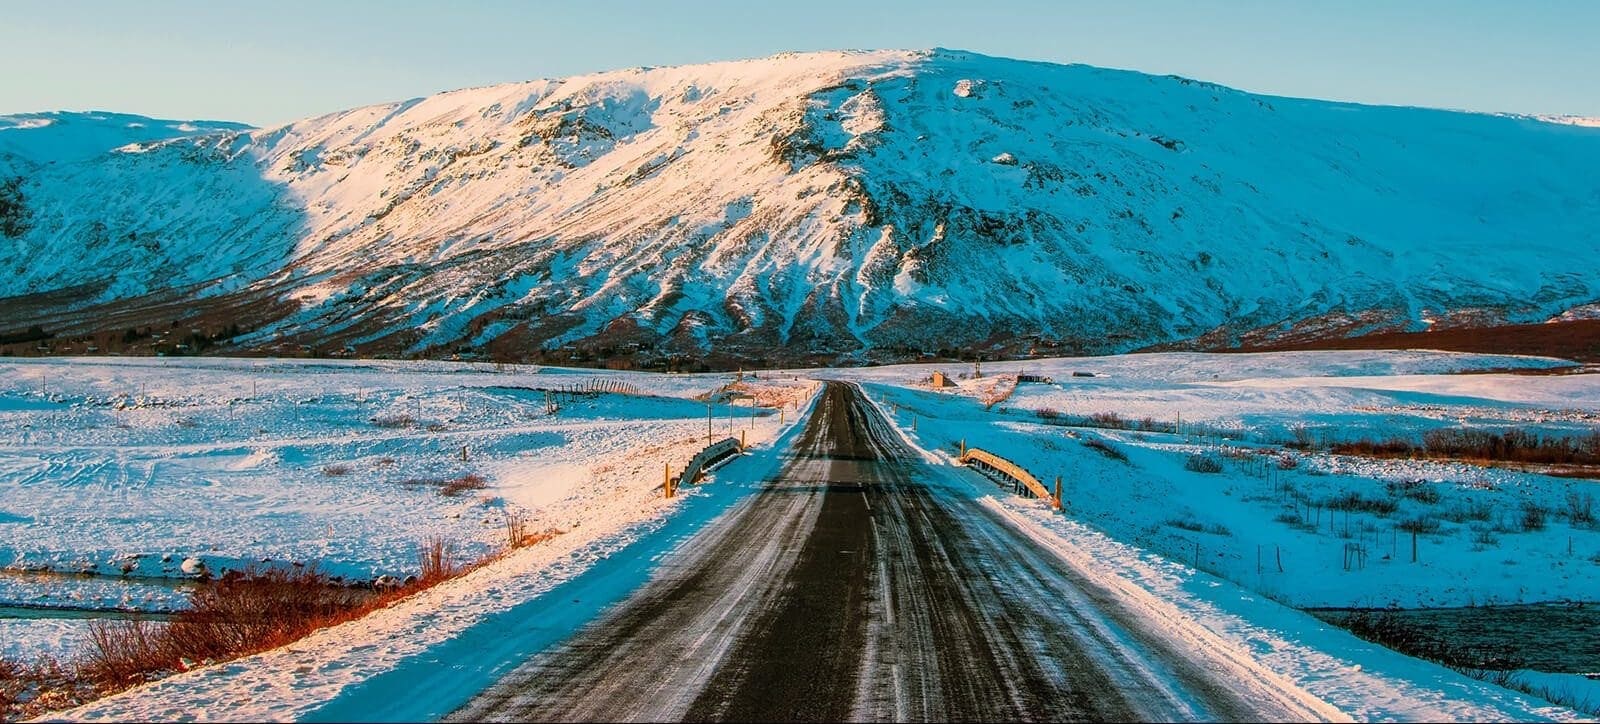 elfos y carreteras, Islandia